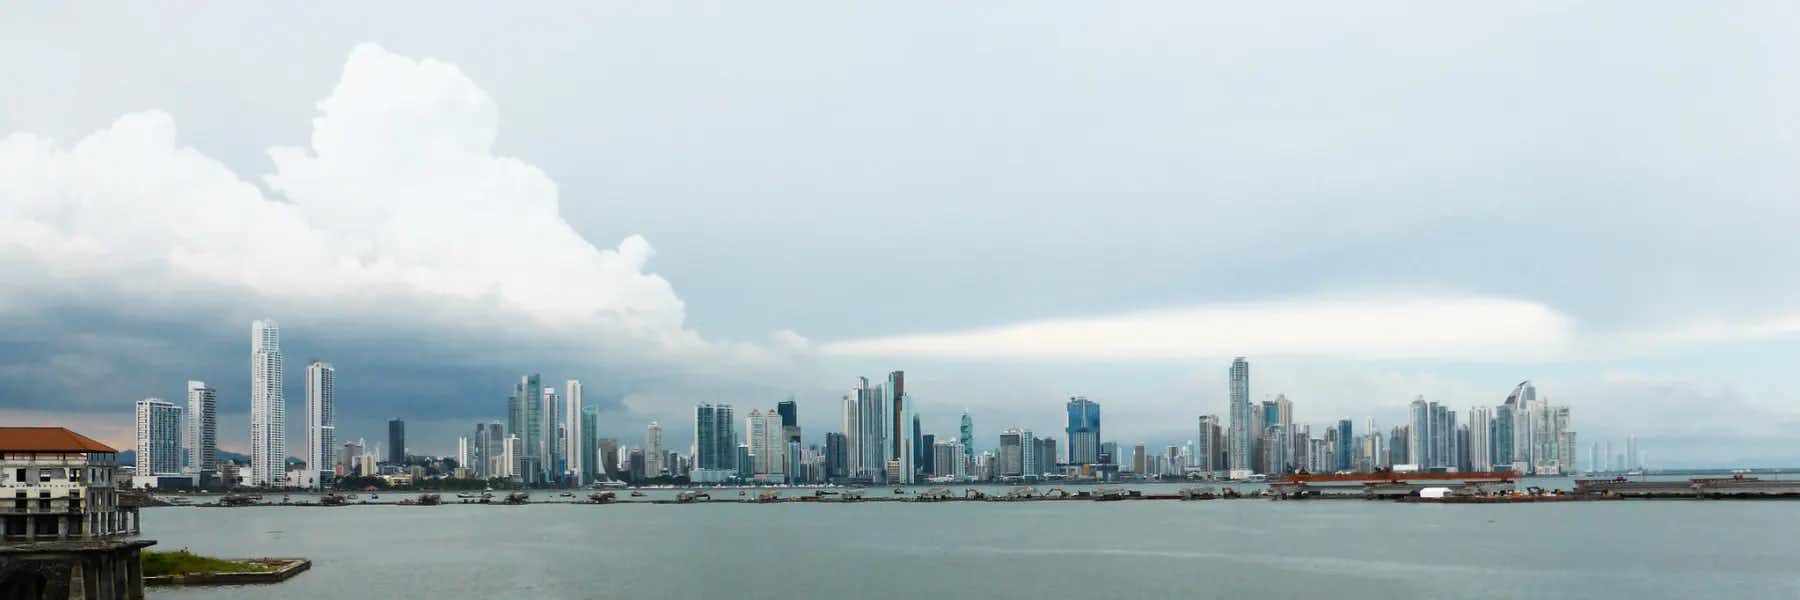 The Economy In Panama